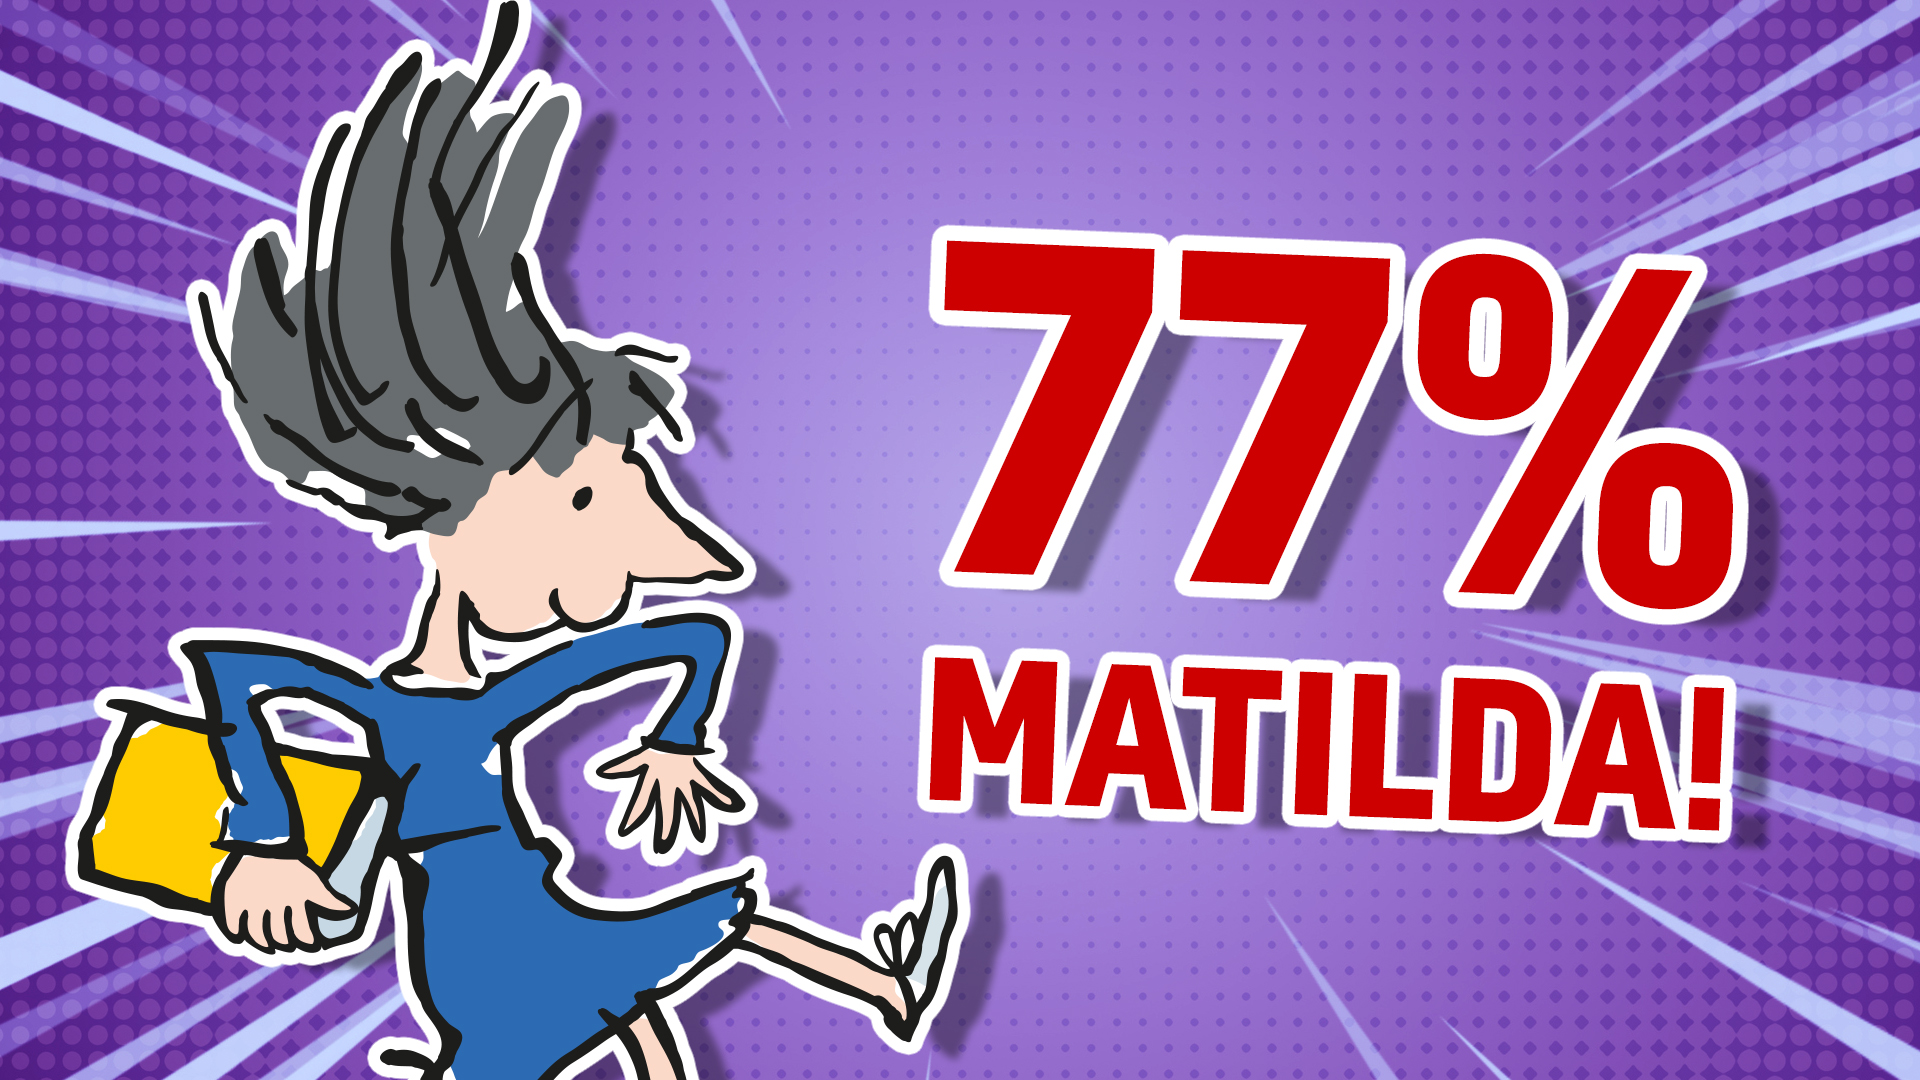 77 % Matilda